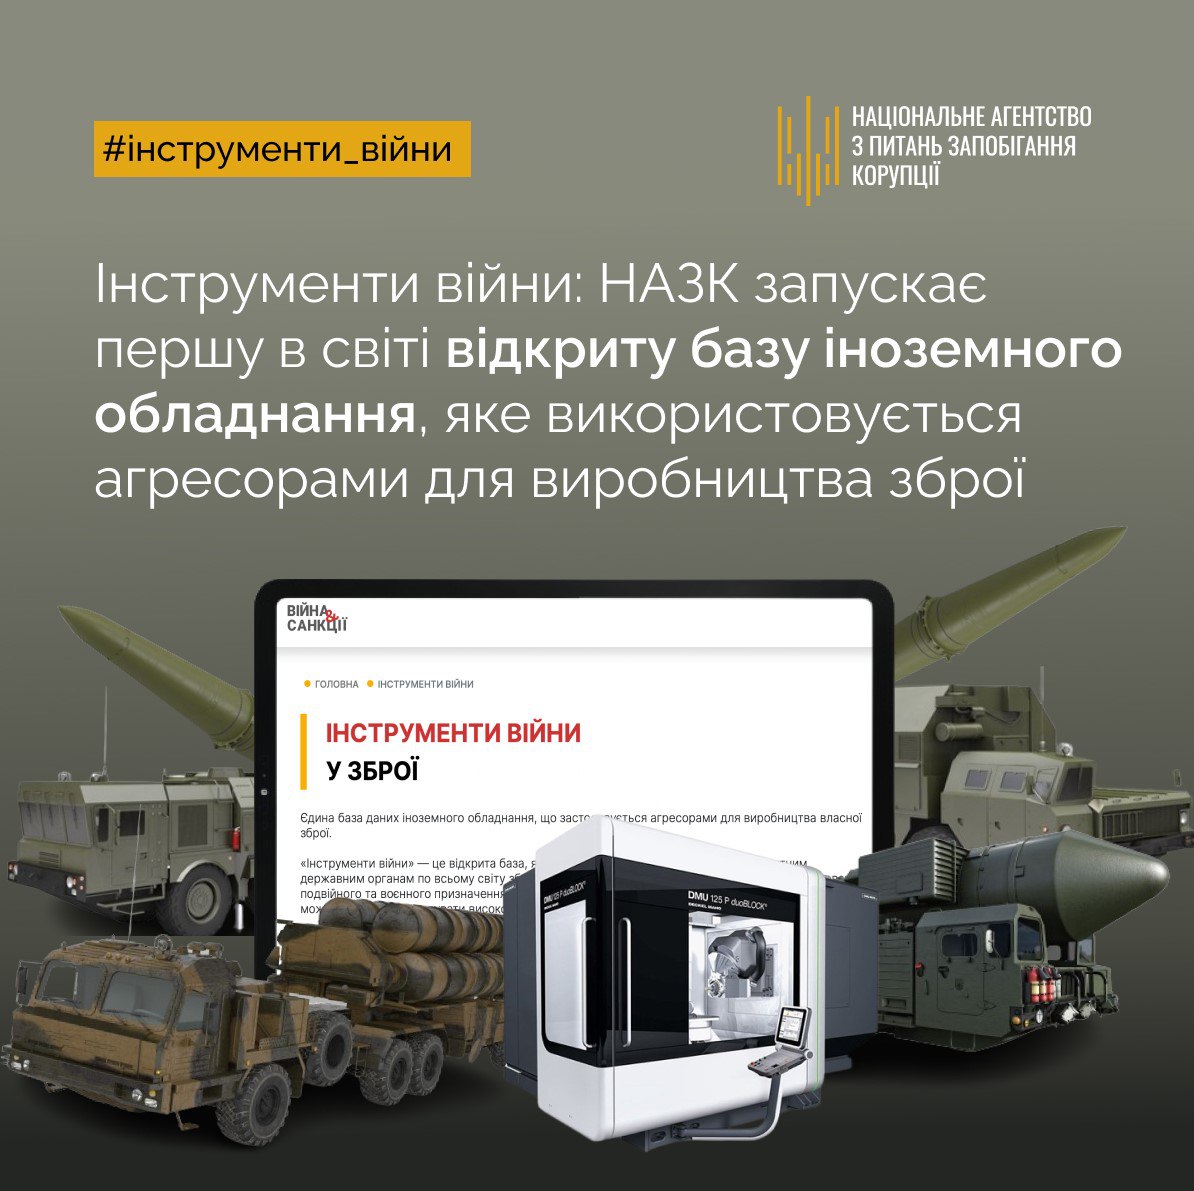 НАЗК запускає відкриту базу даних іноземного обладнання, що застосовується росією для виробництва зброї